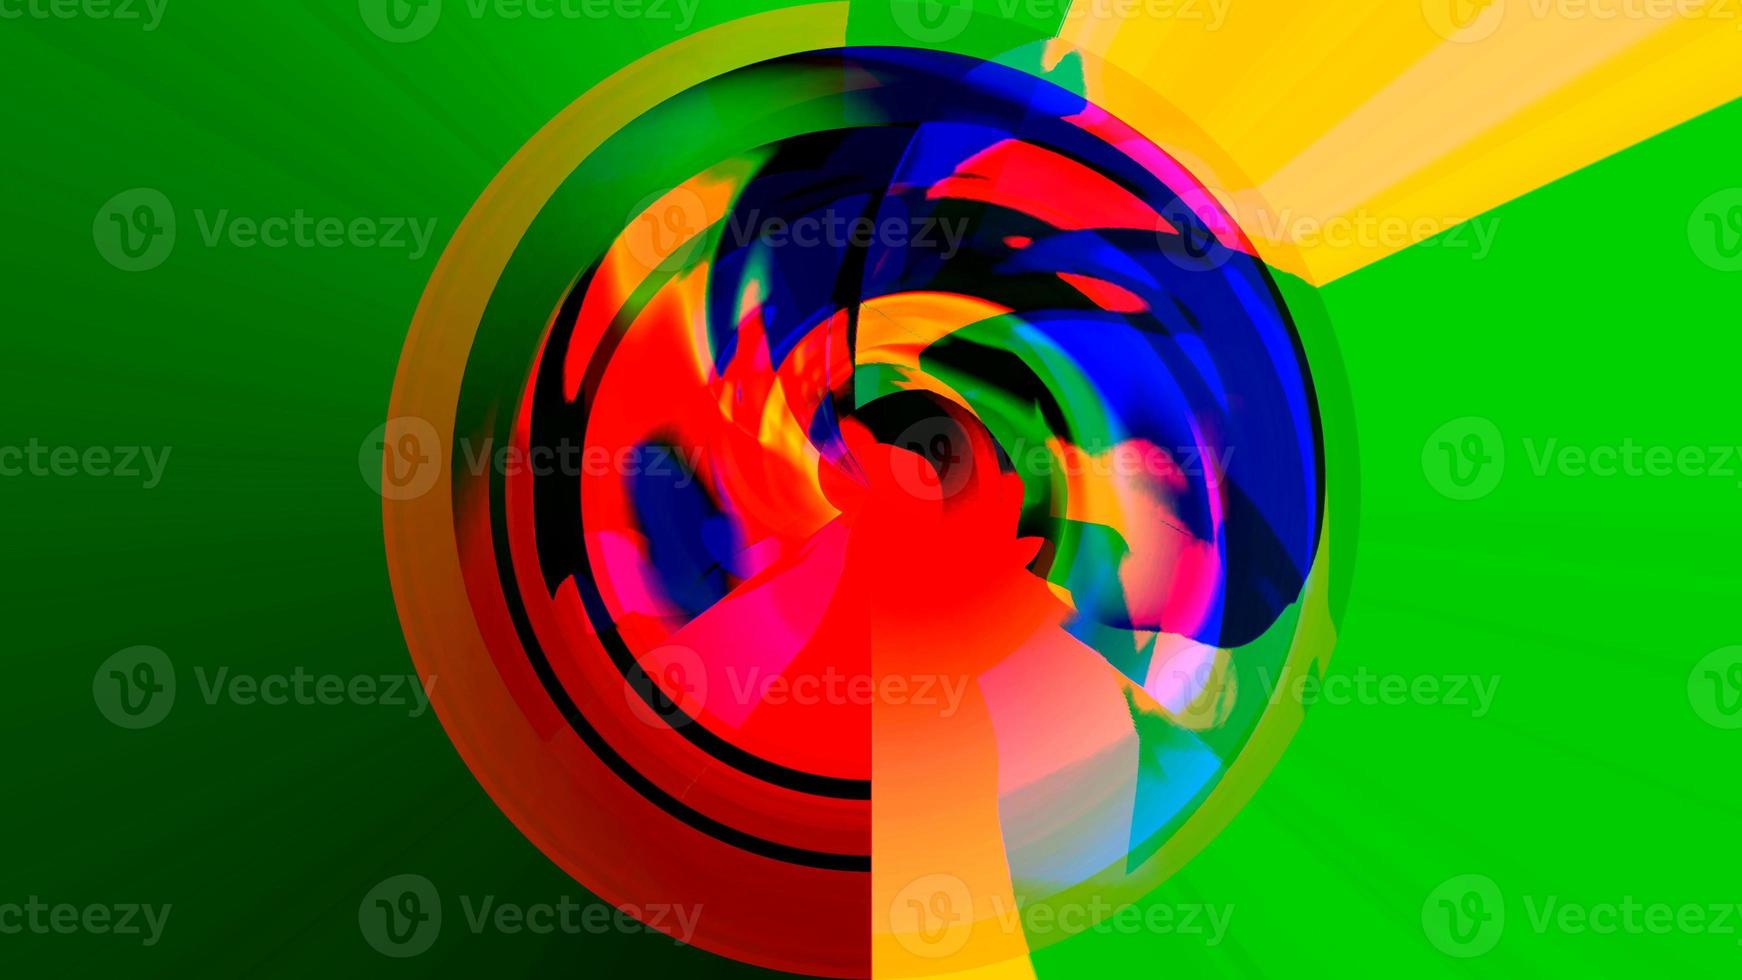 abstracte volumetrische achtergrond met een spectaculaire combinatie van rood, blauw, geel en groen foto